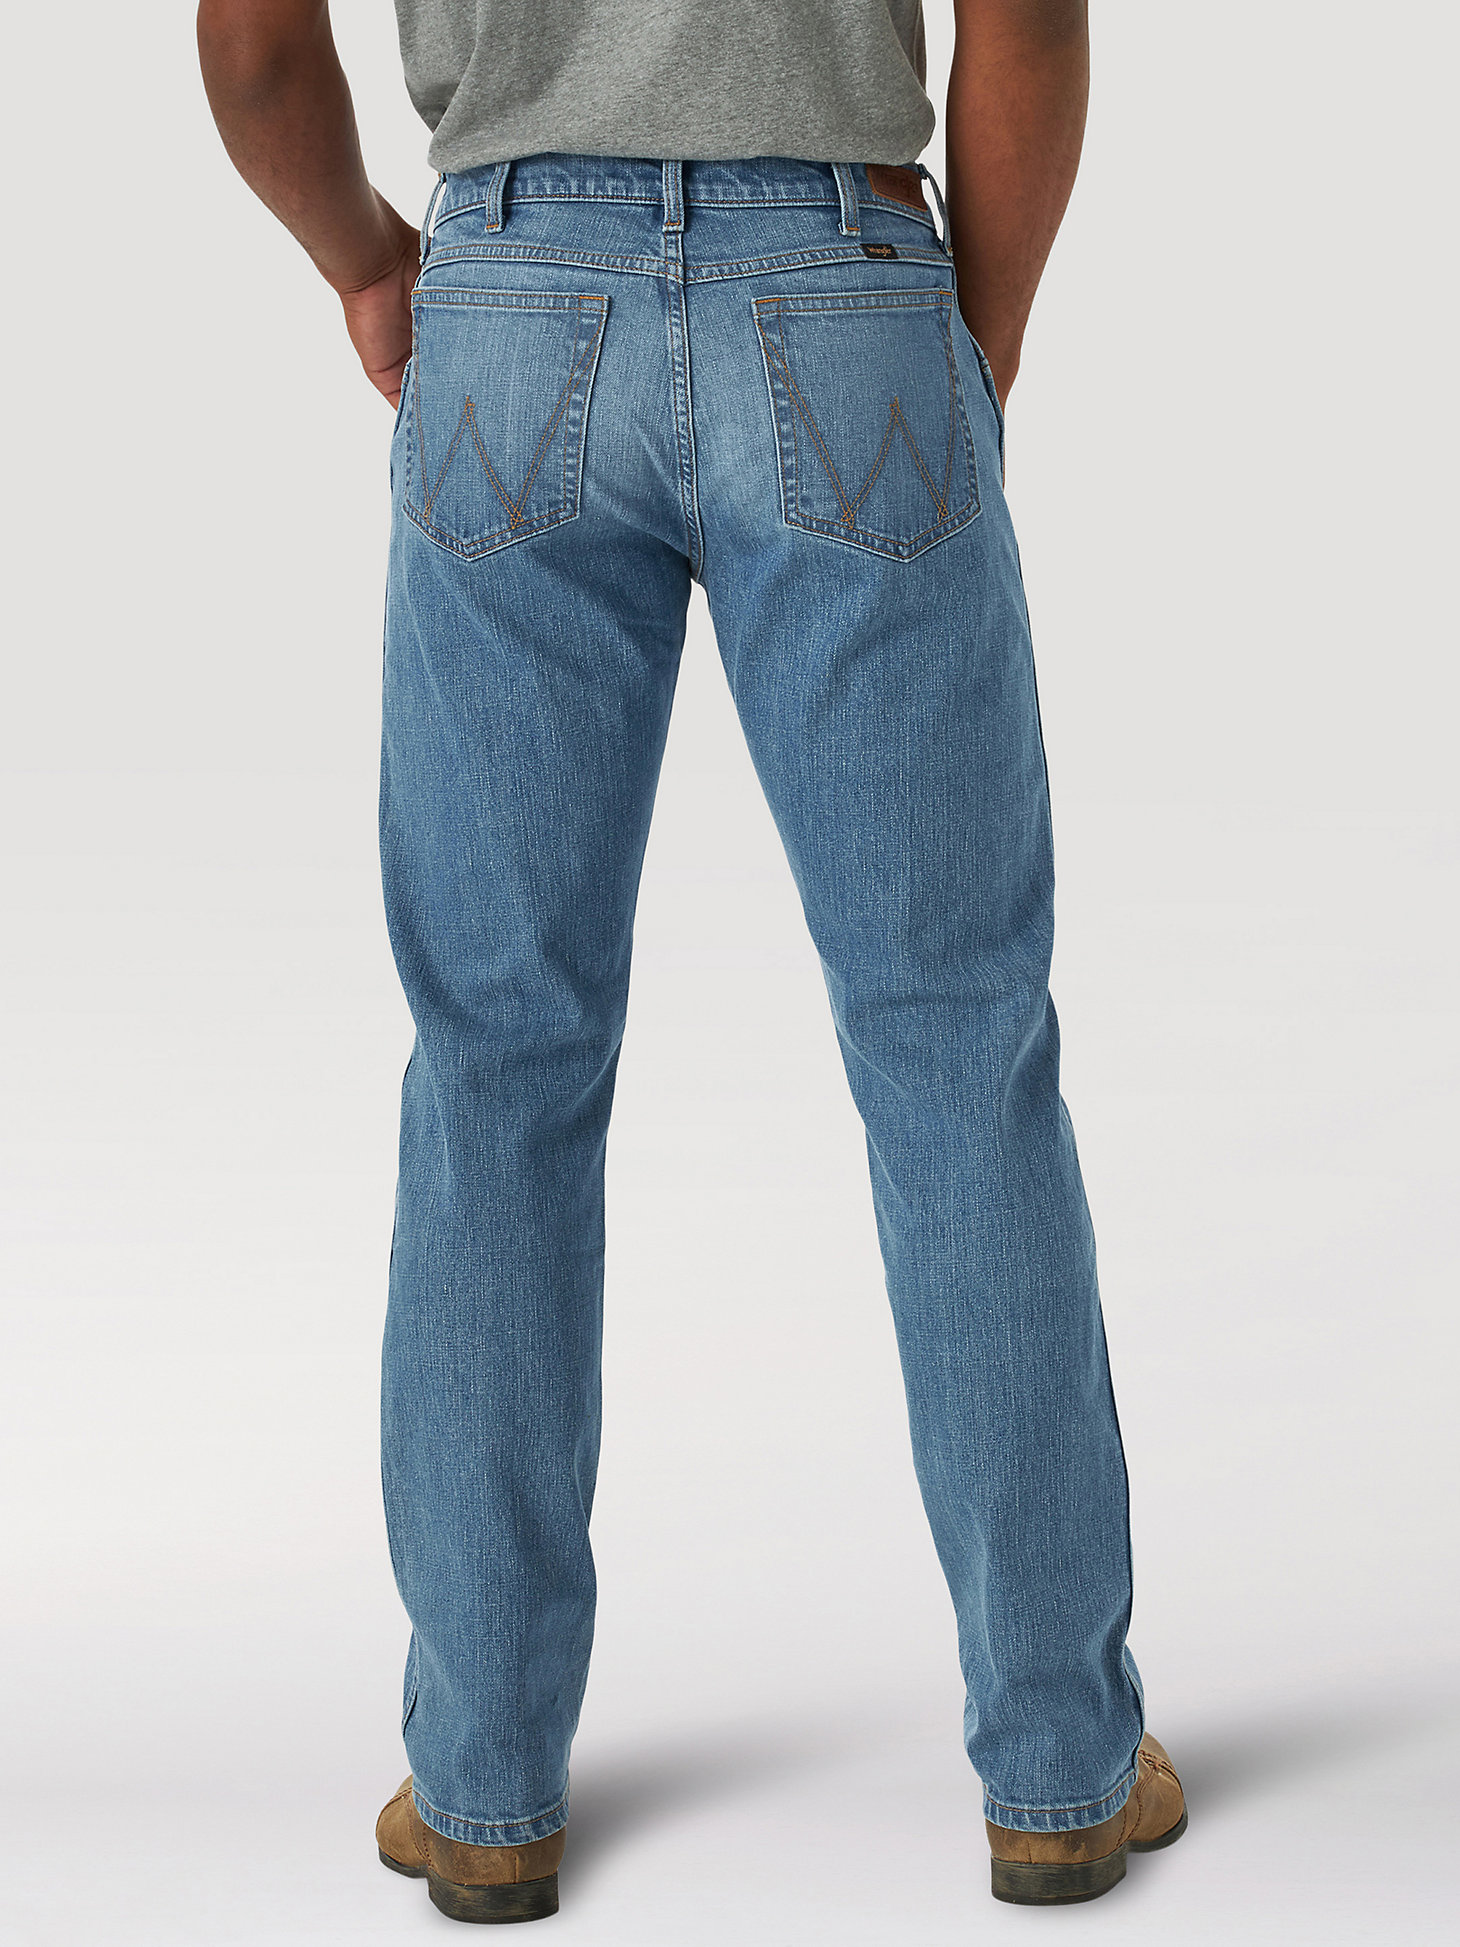 Men's Wrangler® Slim Straight Jean in Drake alternative view 1